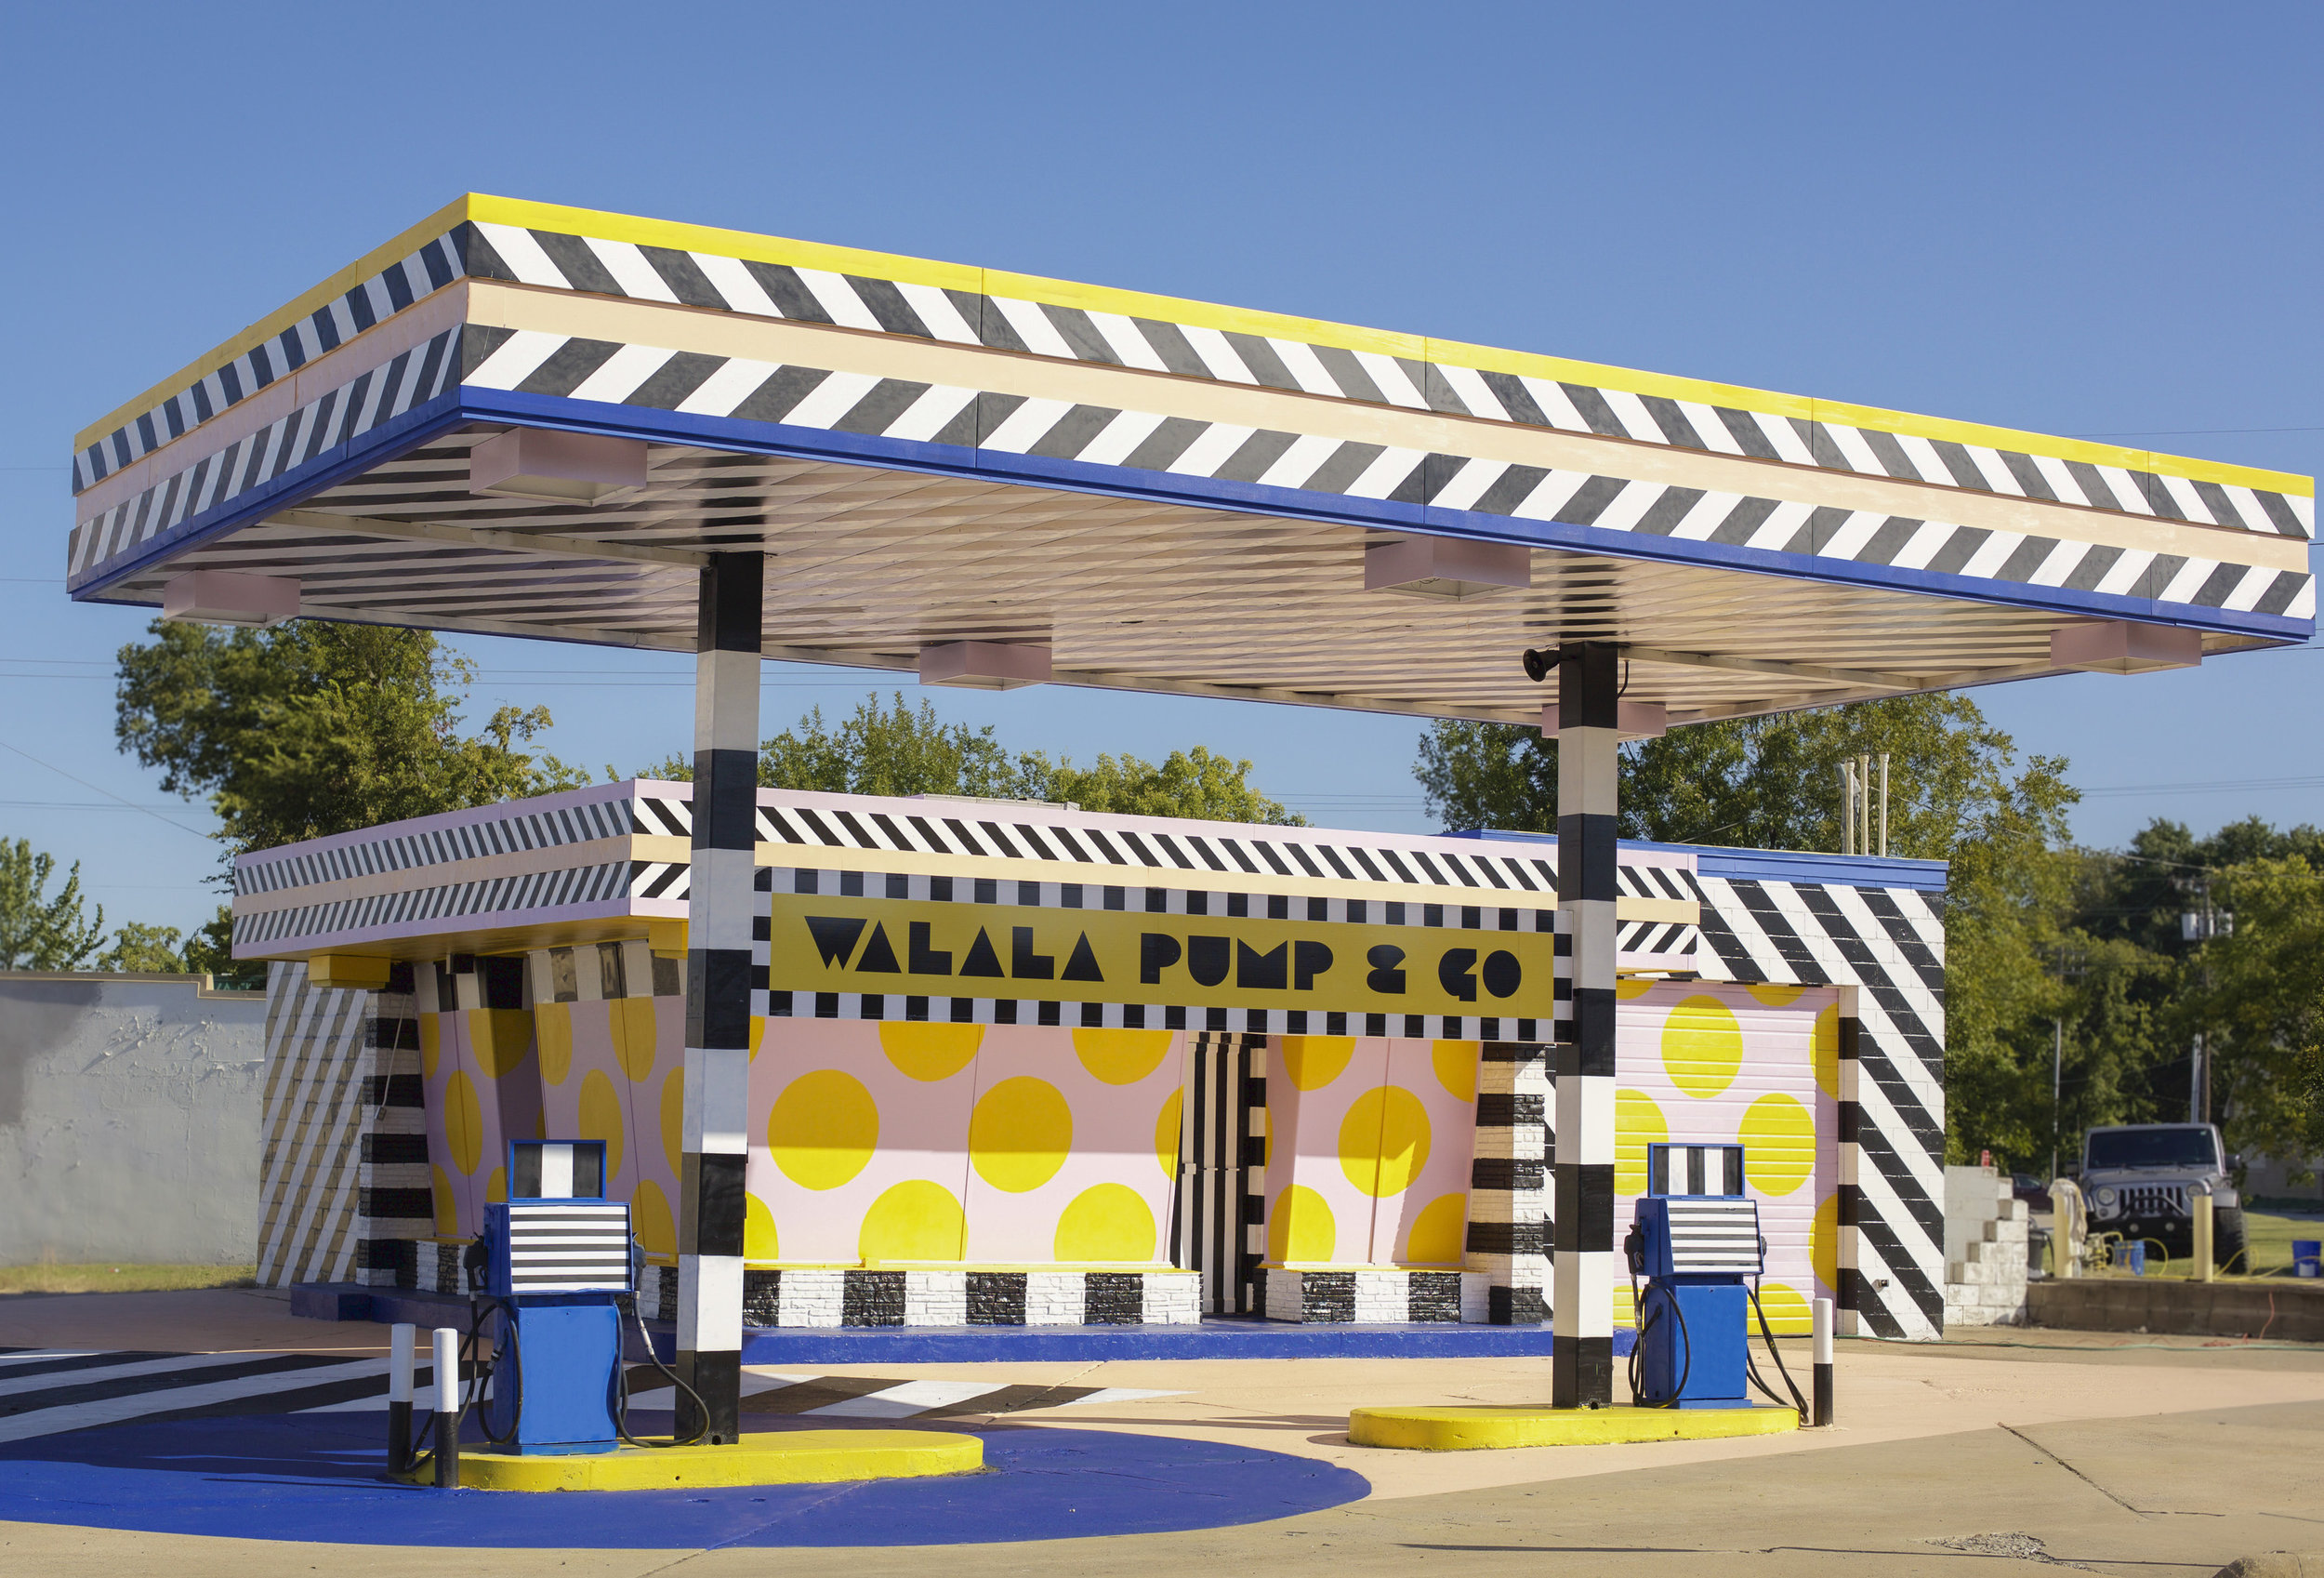 艺术家卡米尔·瓦拉拉把一个加油站变成了这个粉红色和黄色的公共艺术作品。